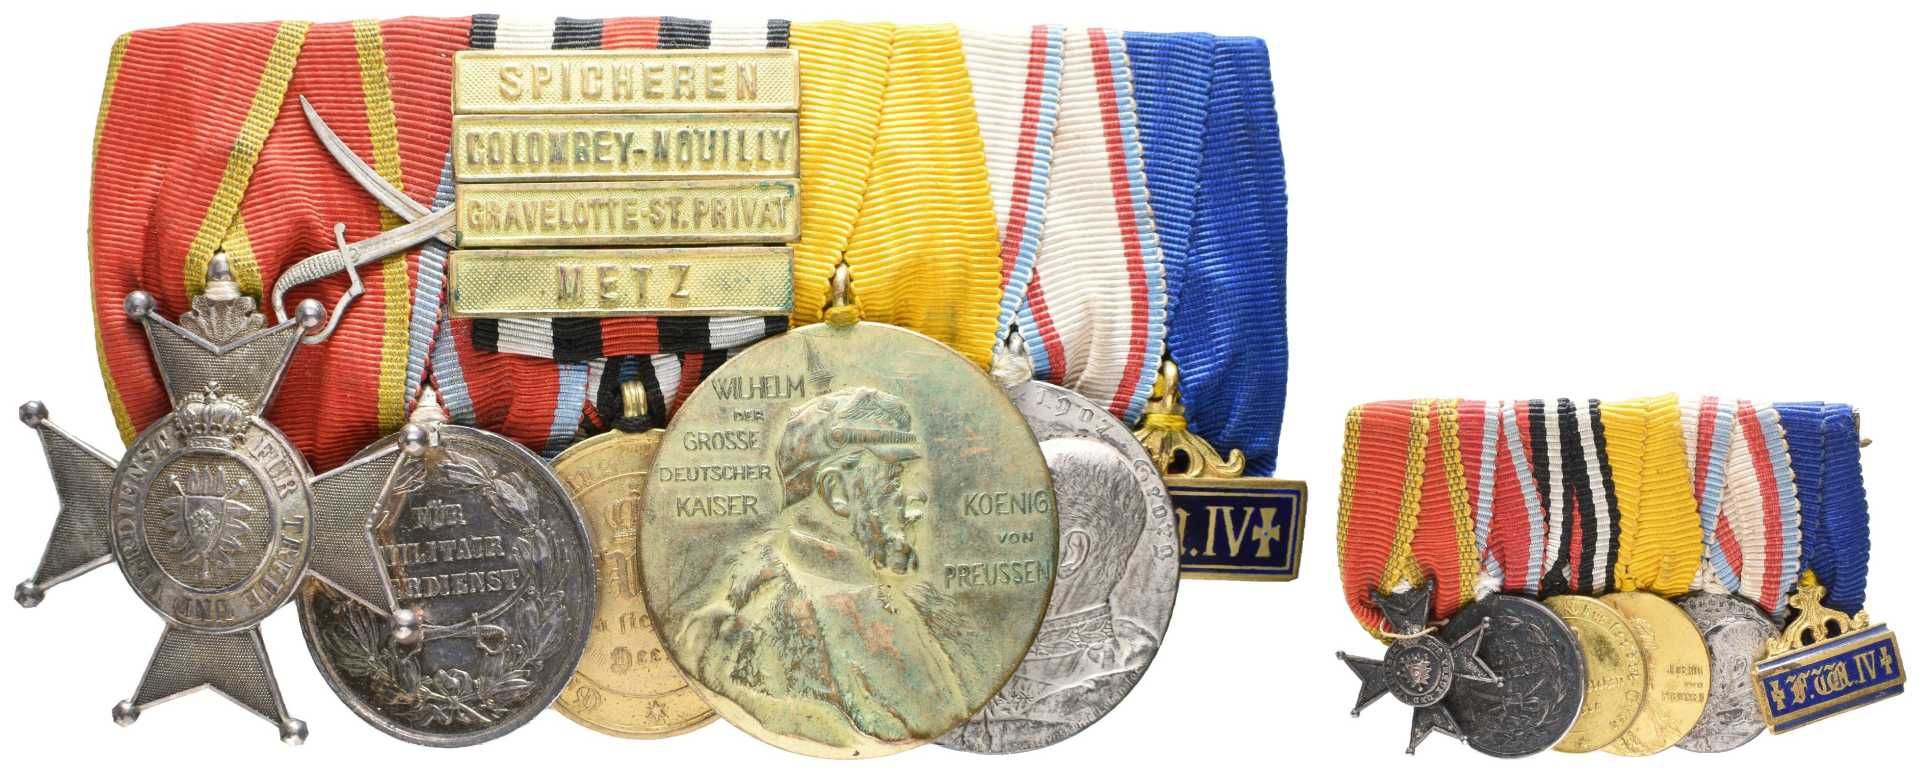 Ordensspange mit 6 Auszeichnungen, dabei Schaumburg-Lippe Silbernes Verdienstkreuz, Silberne Militär